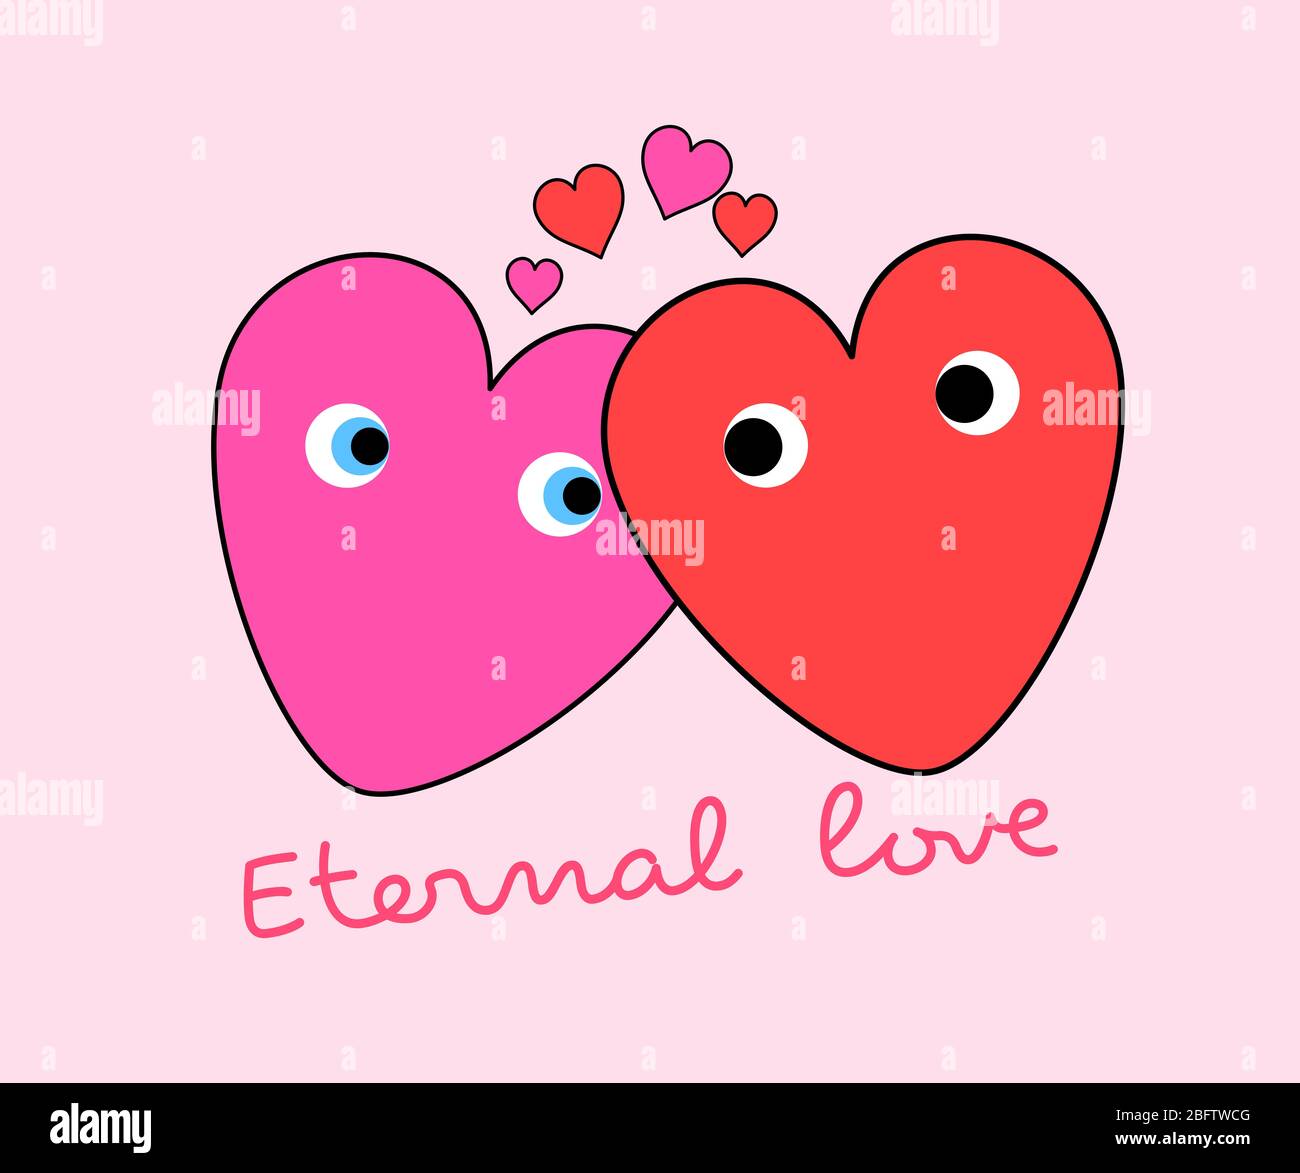 Zwei Herzen in einer romantischen Stimmung, ewige Liebe Konzept Illustration. Stockfoto